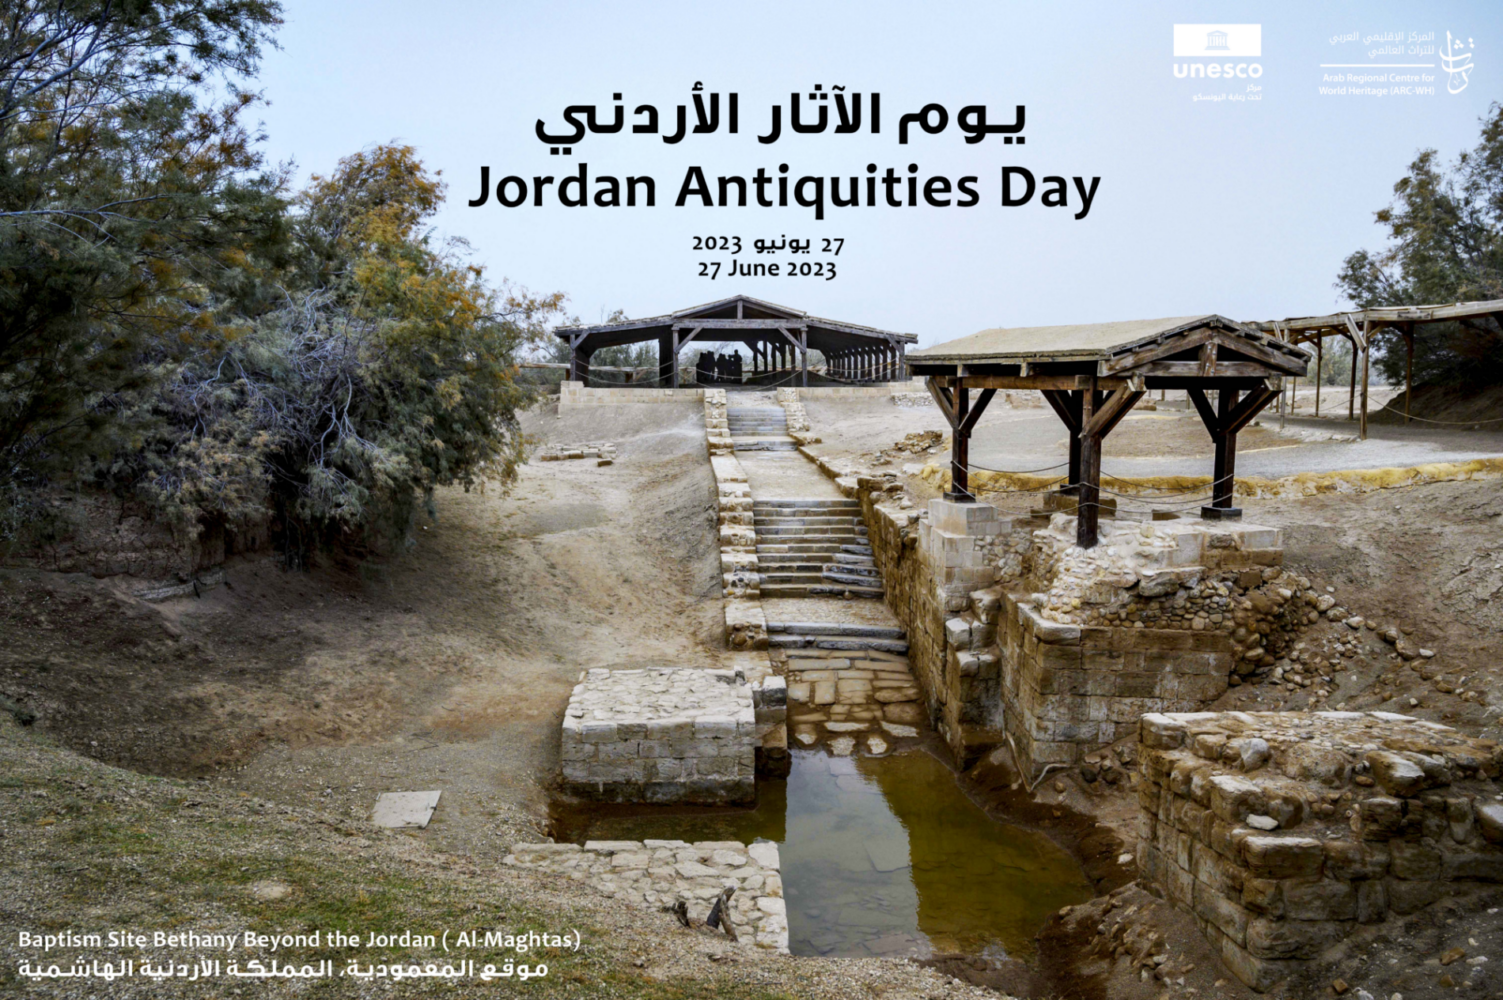 المركز الإقليمي العربي للتراث العالمي يحيي “يوم الآثار الأردني